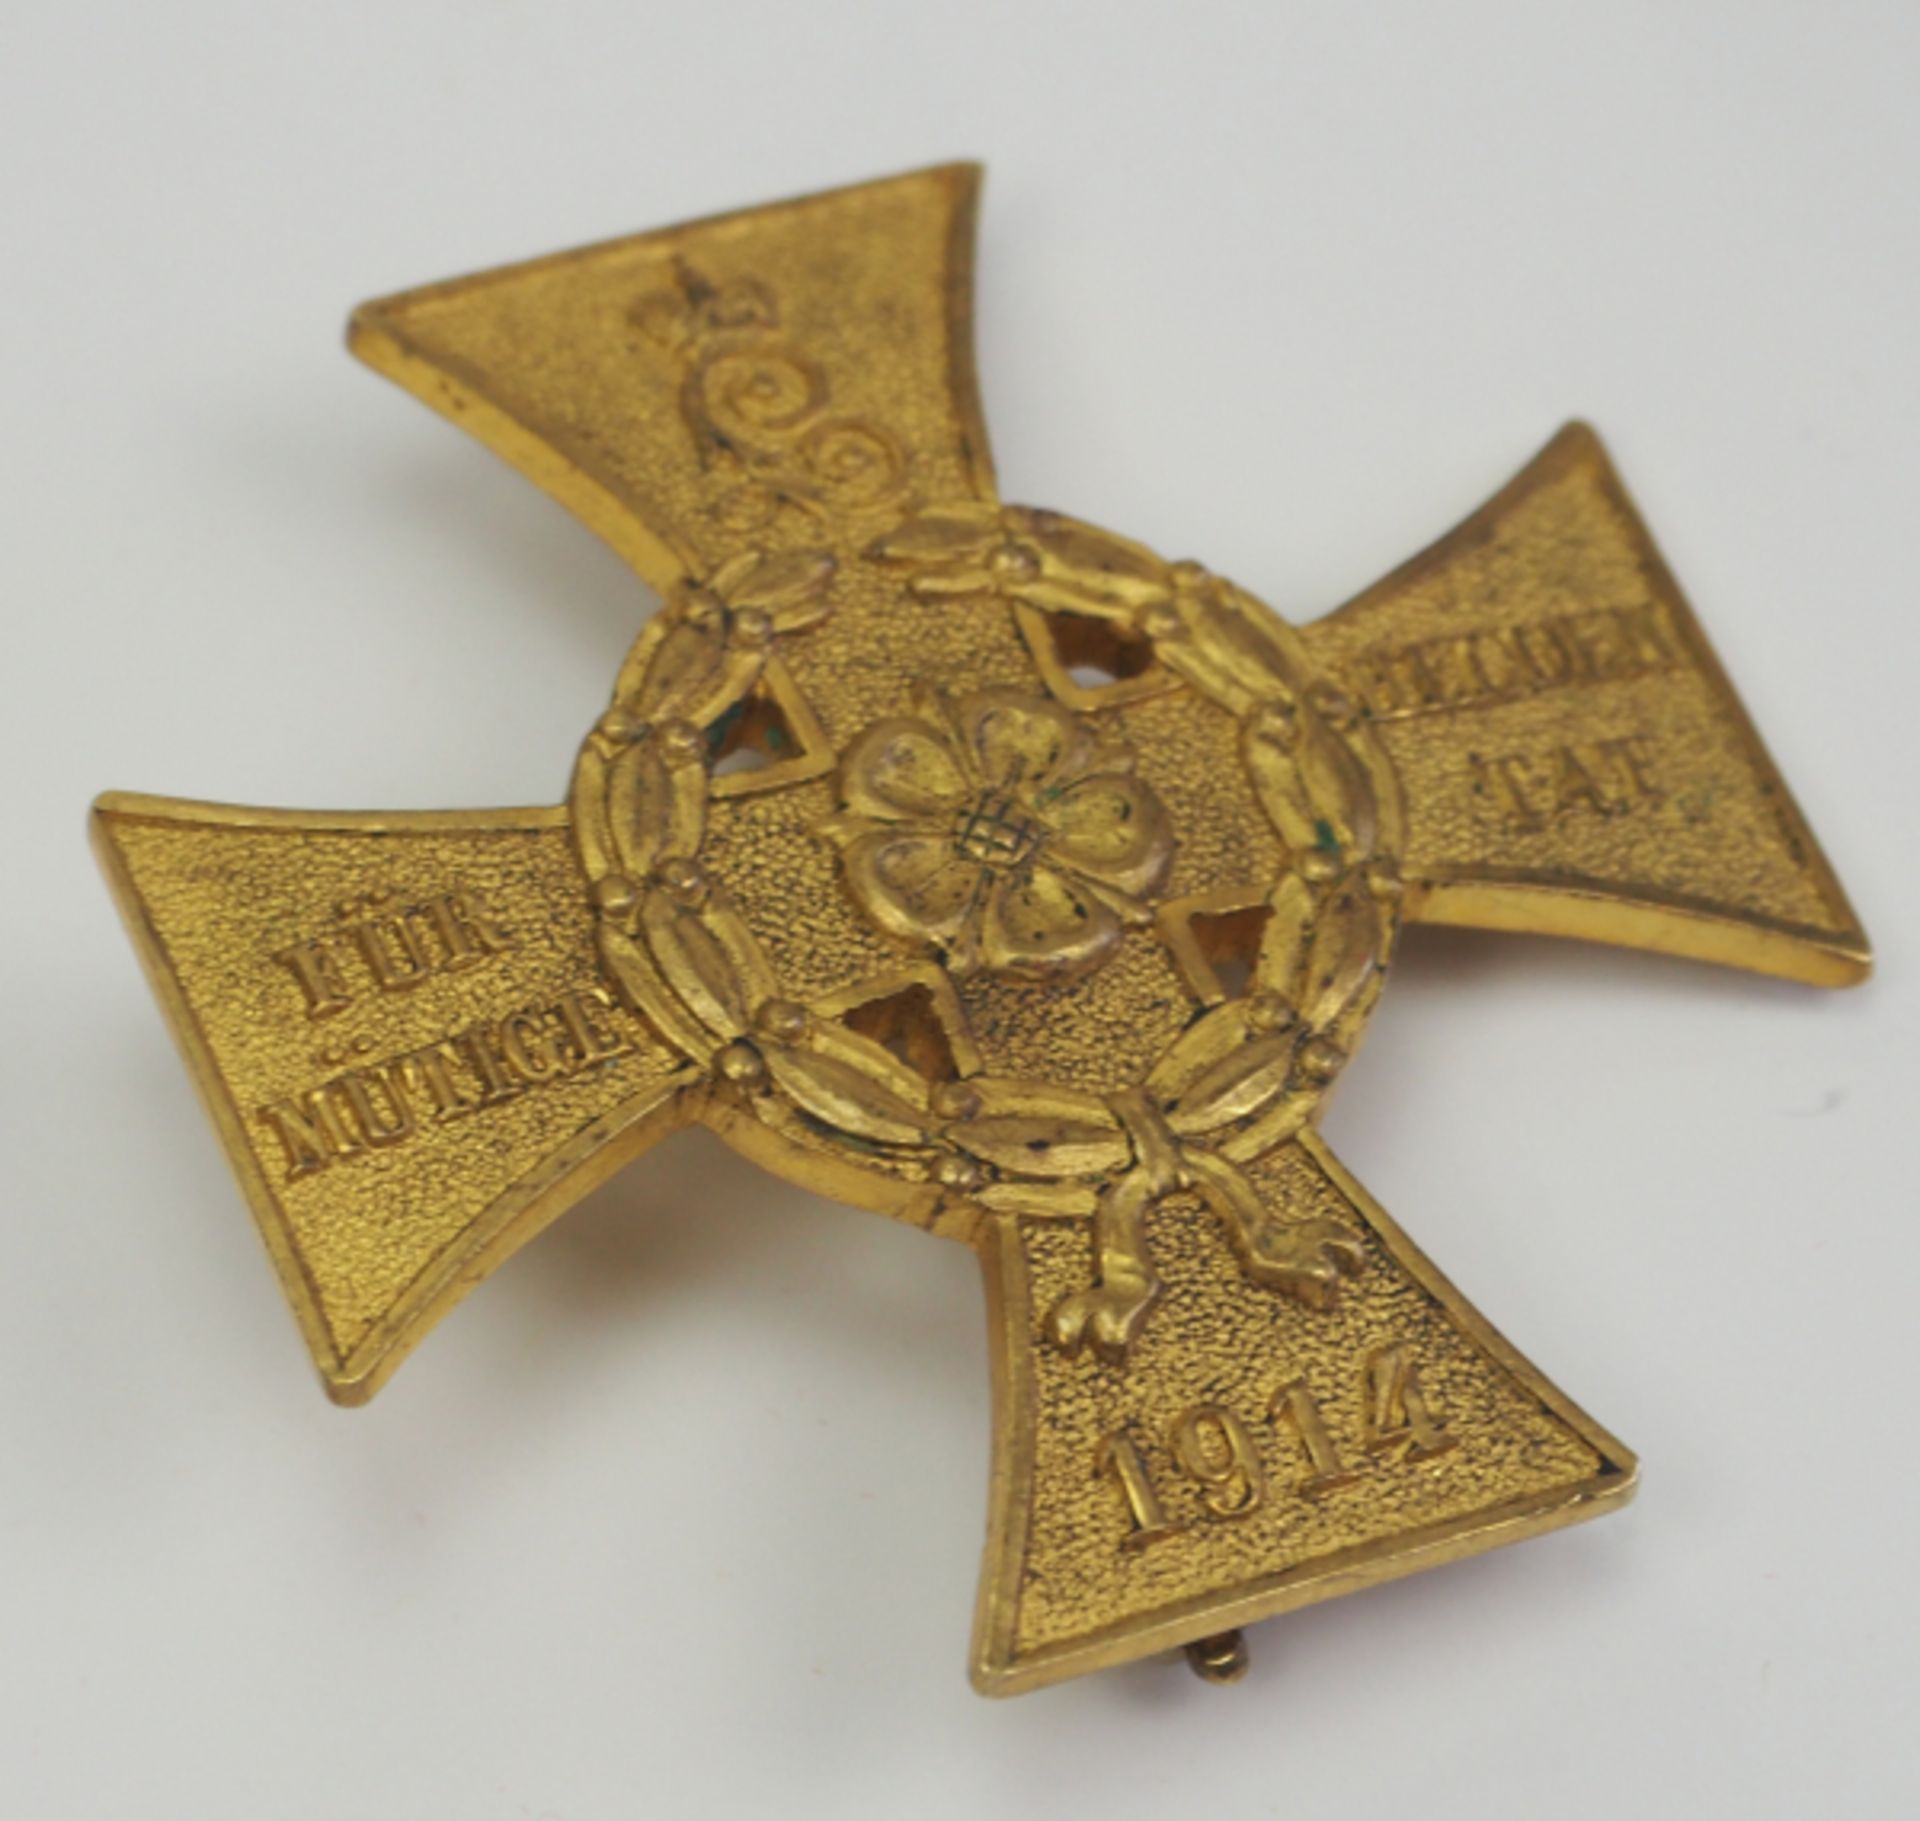 Lippe-Detmold: Kriegsehrenkreuz für heldenmütige Tat.Buntmetall vergoldet, durchbrochen, leicht - Bild 2 aus 3